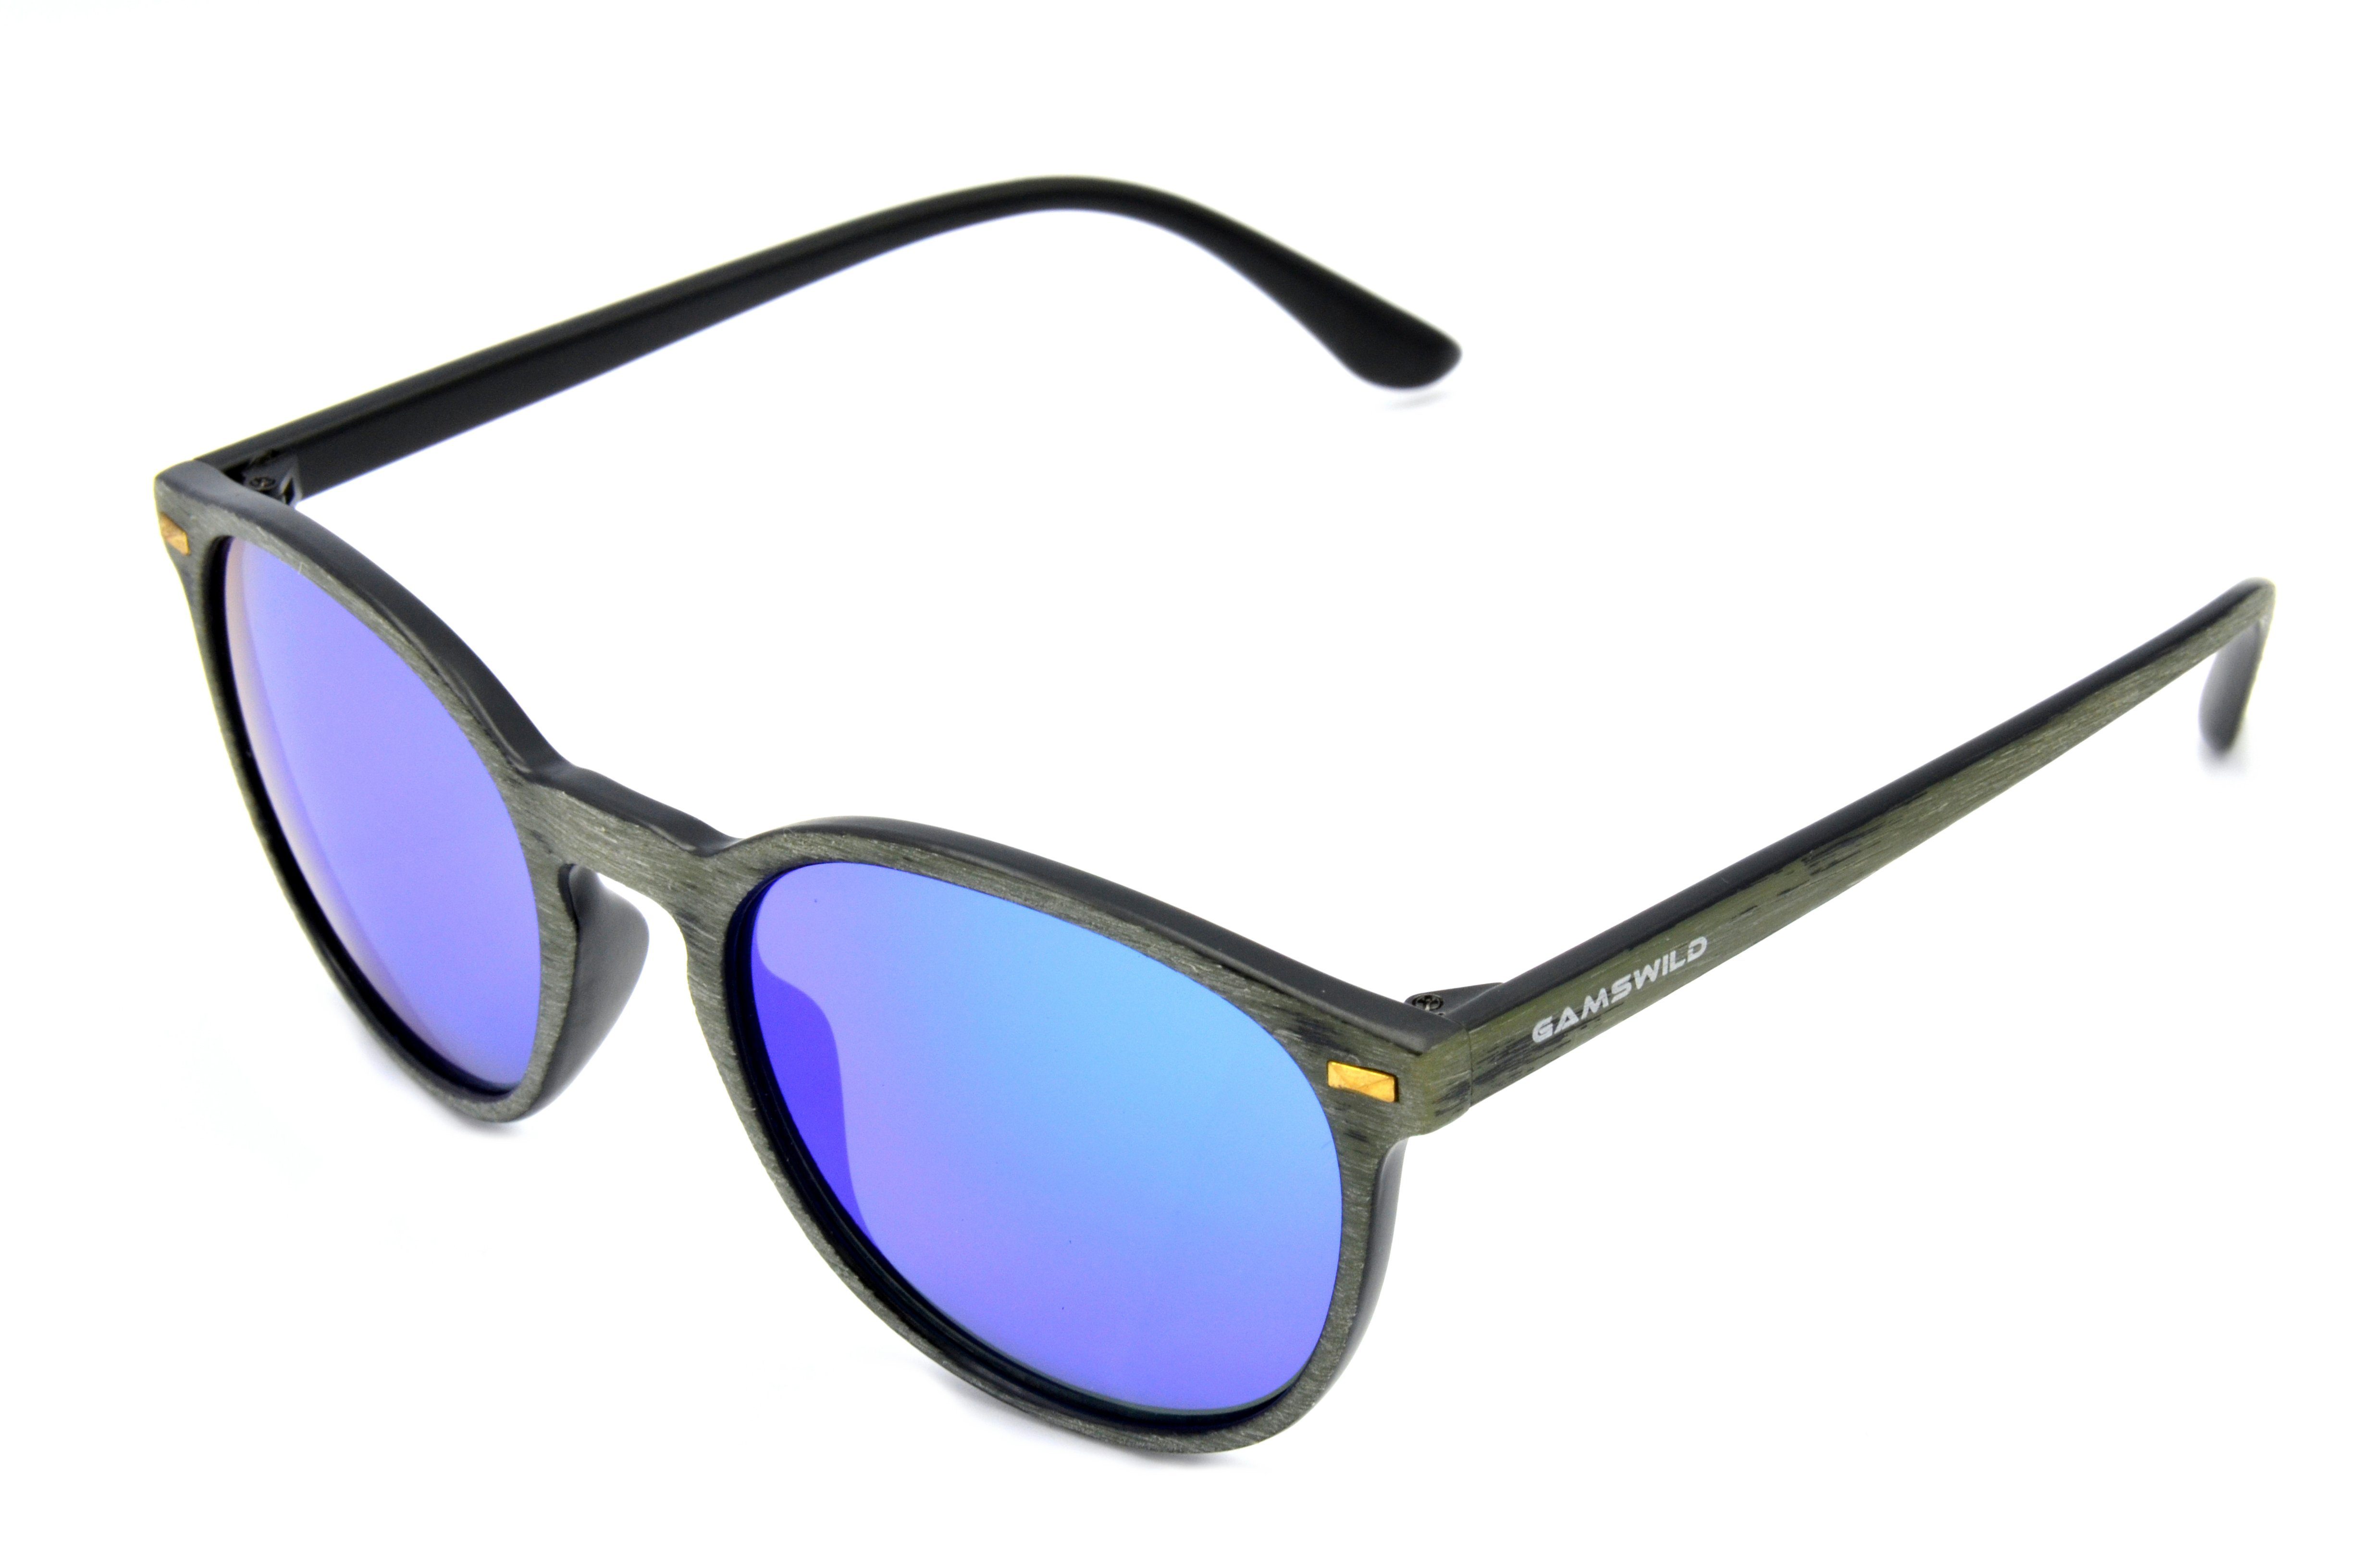 Gamswild Sonnenbrille »WM1020 GAMSSTYLE Mode Brille Damen Herren Unisex  Holzoptik, gold, blau, grün-türkis, pink, rot« online kaufen | OTTO